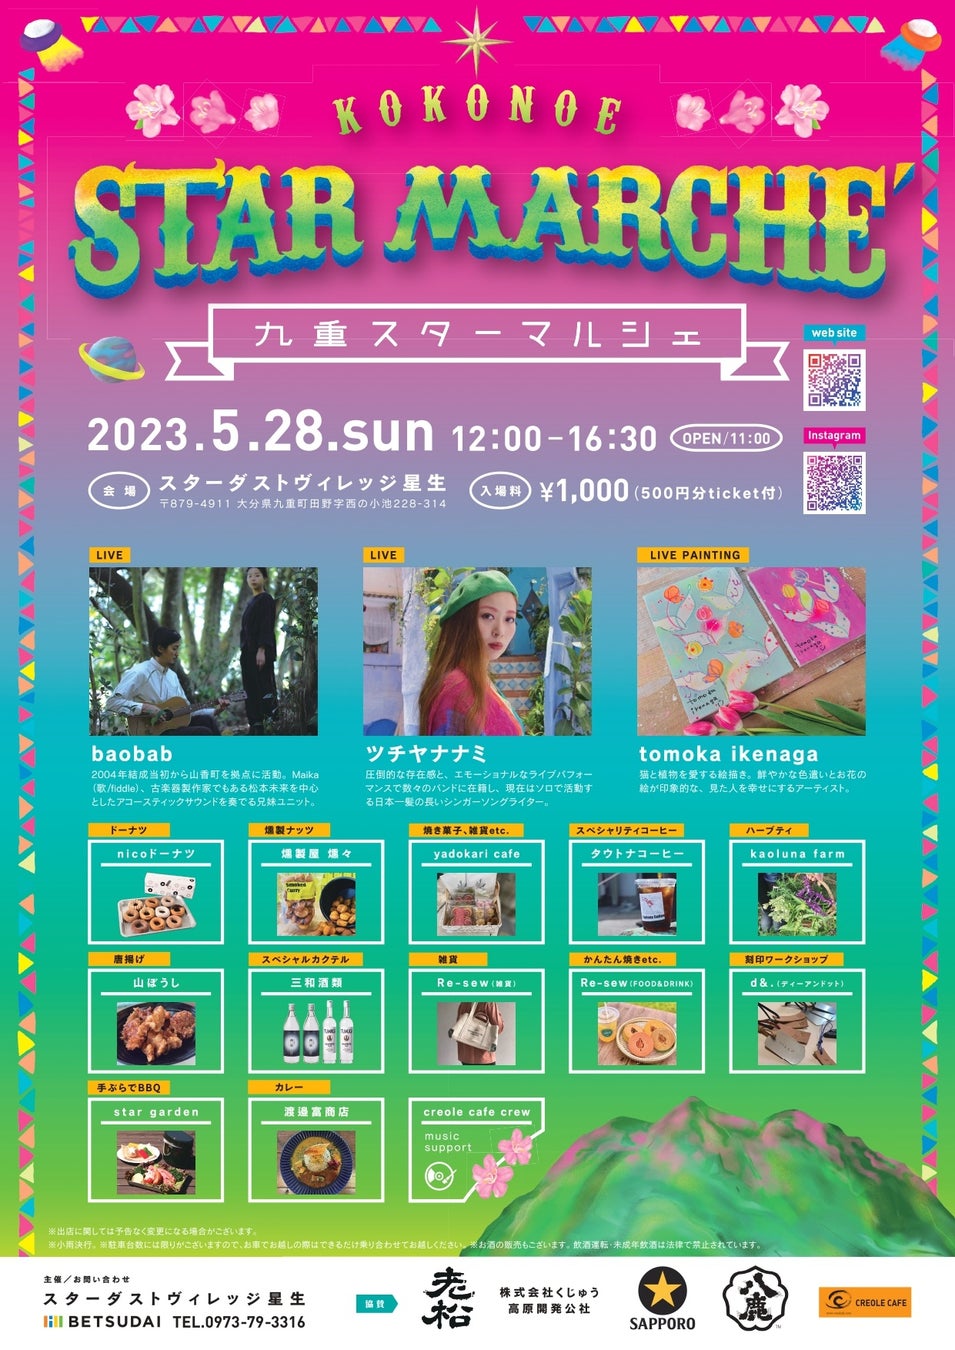 九重町で音楽ライブ・マルシェイベント開催！「KOKONOE STAR MARCHE 2023 ～九重スターマルシェ～」